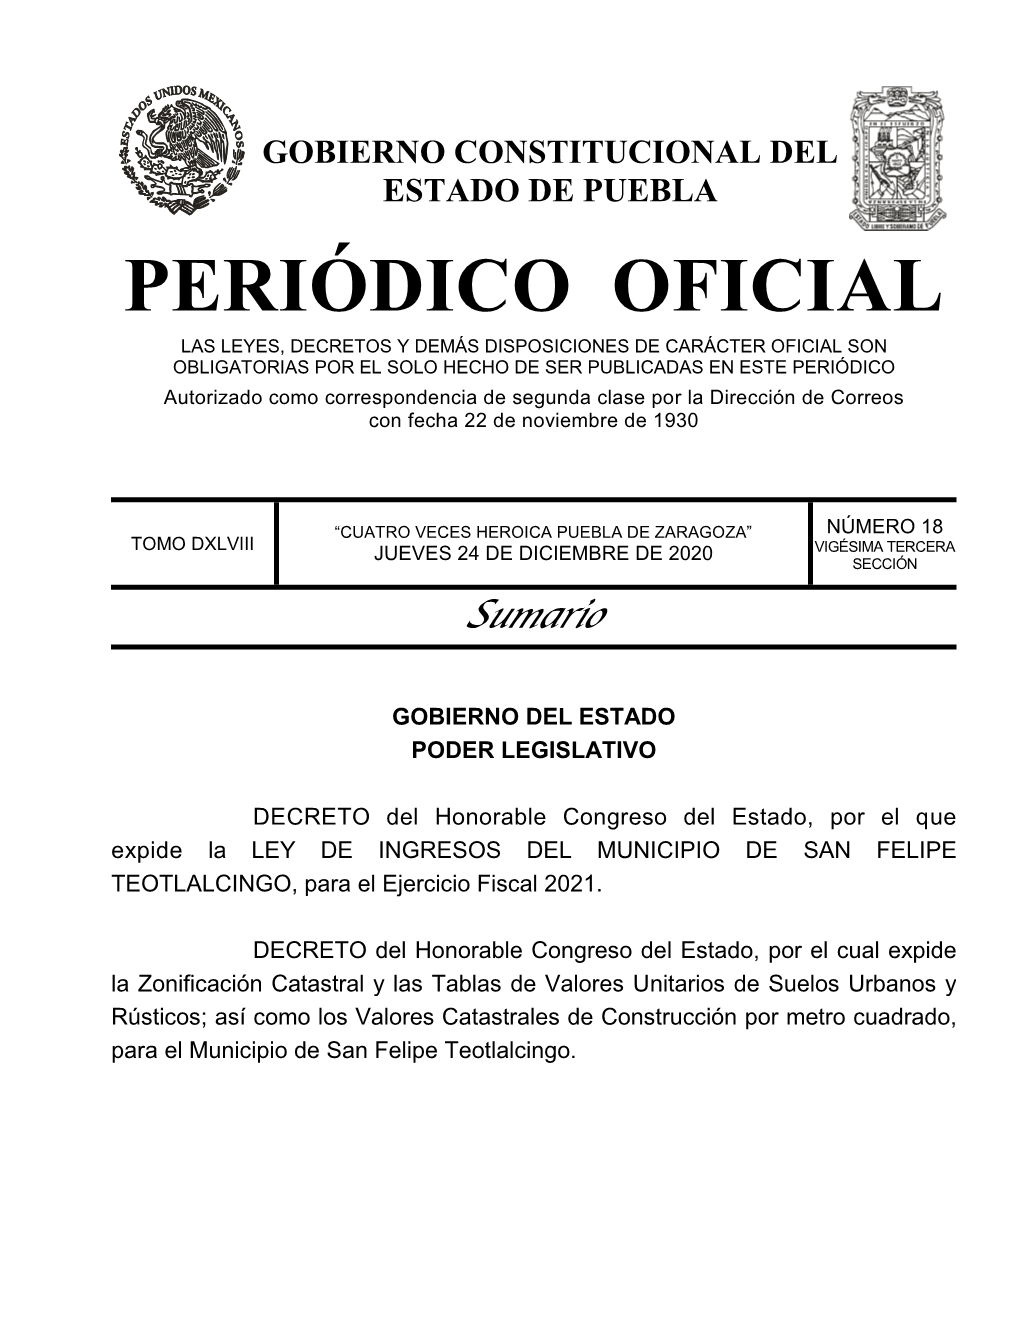 LEY DE INGRESOS DEL MUNICIPIO DE SAN FELIPE TEOTLALCINGO, Para El Ejercicio Fiscal 2021